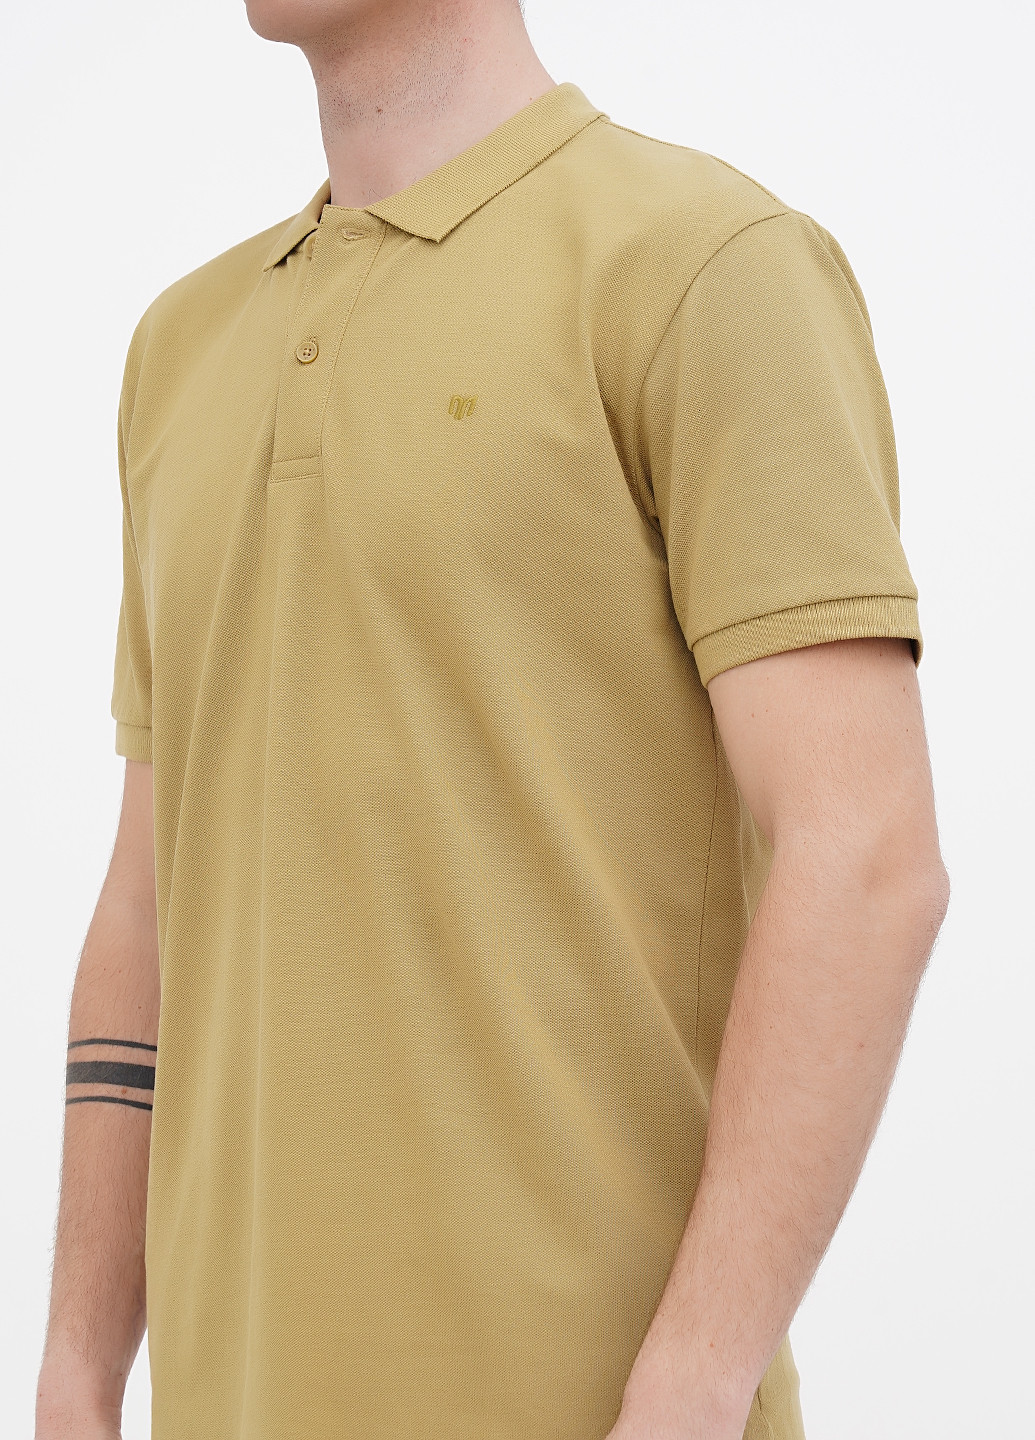 Оливковая футболка-поло для мужчин Minimum однотонная